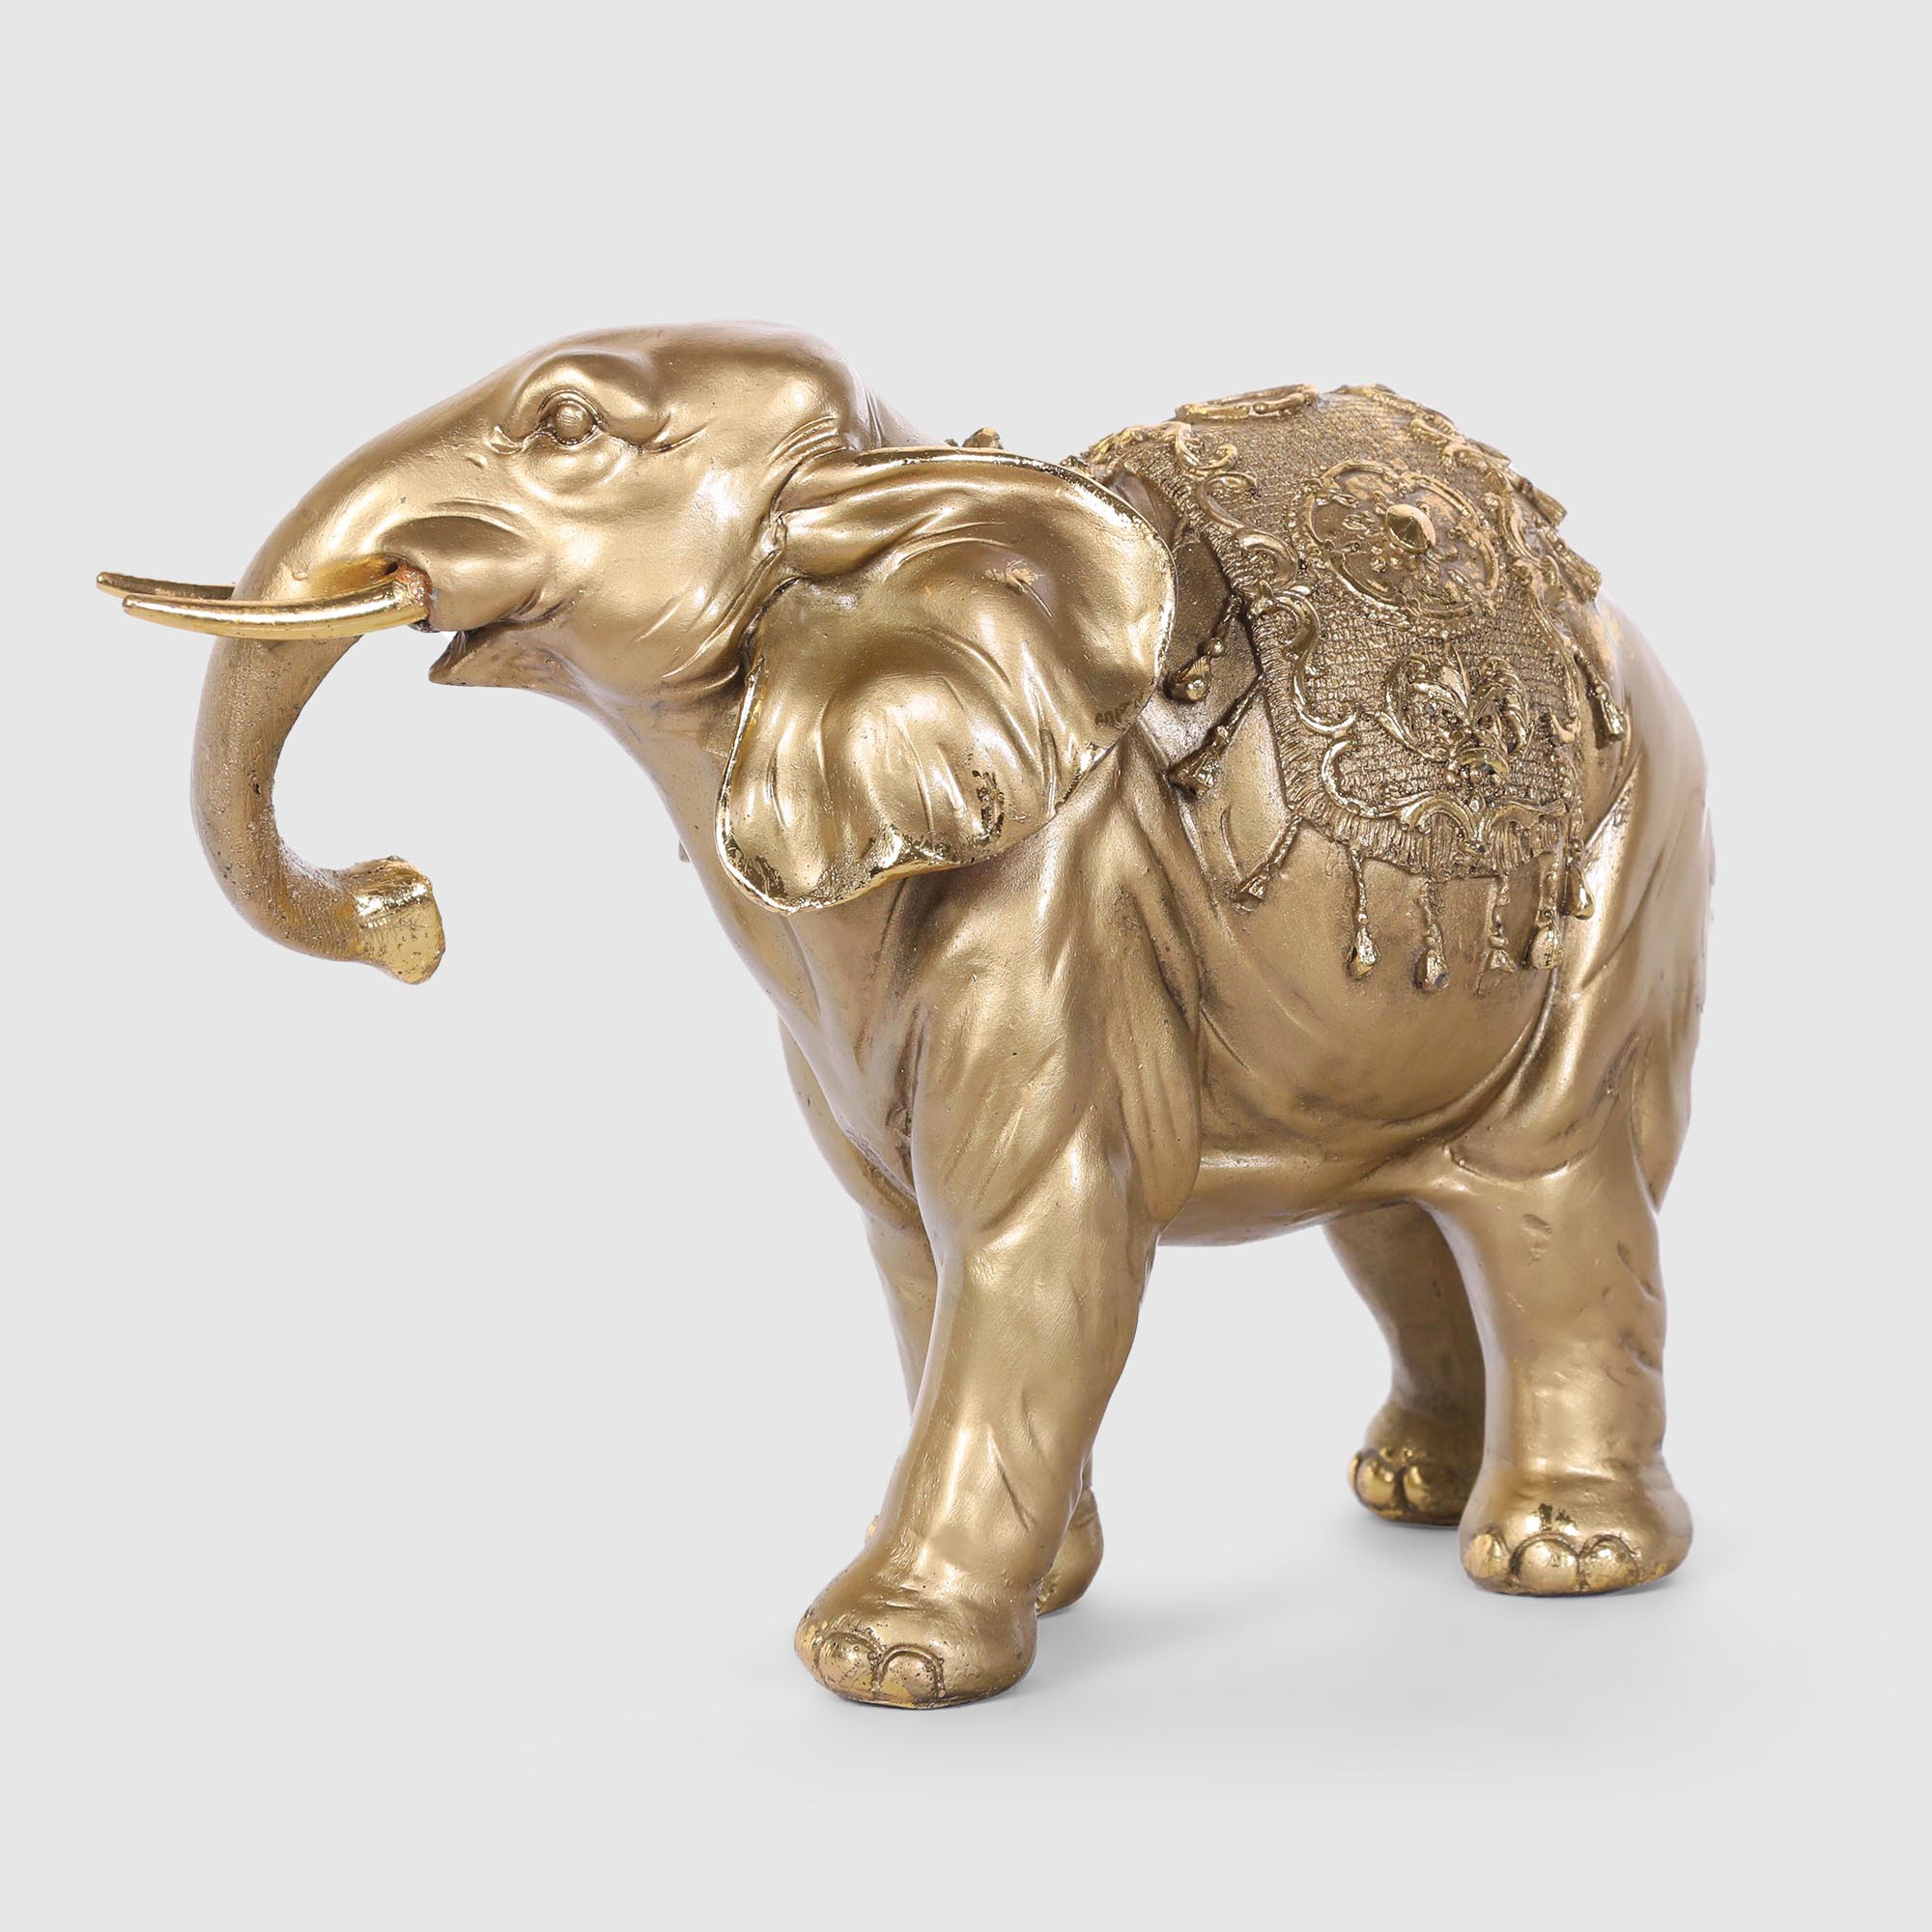 Декоративная фигура Полиформ Слон с накидкой 13 см